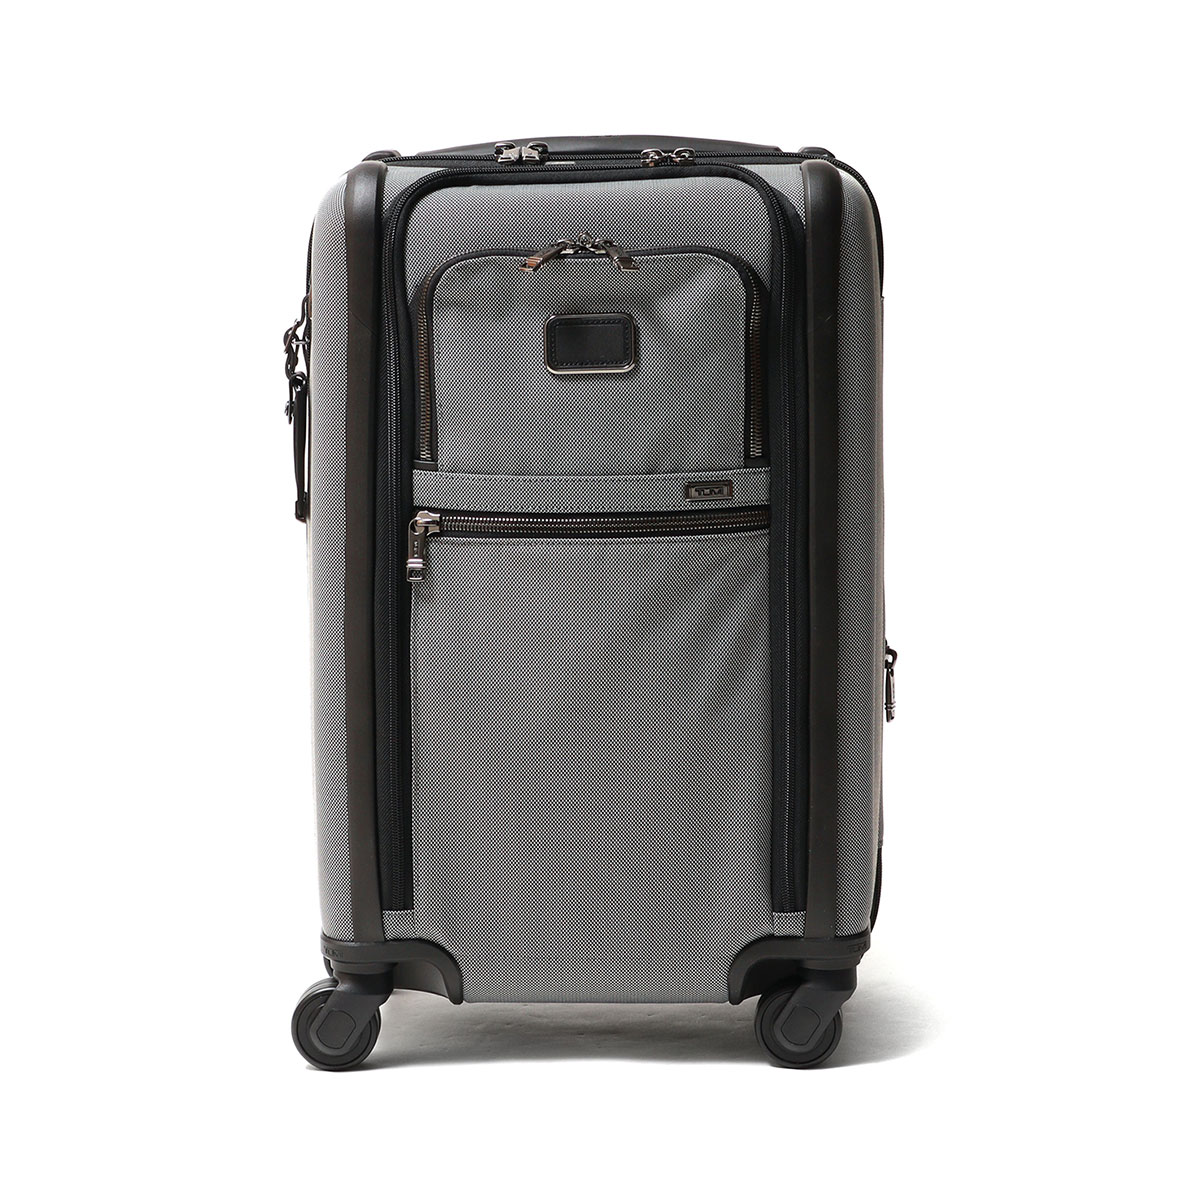 正規品5年保証 トゥミ スーツケース 機内持ち込み S TUMI キャリー 